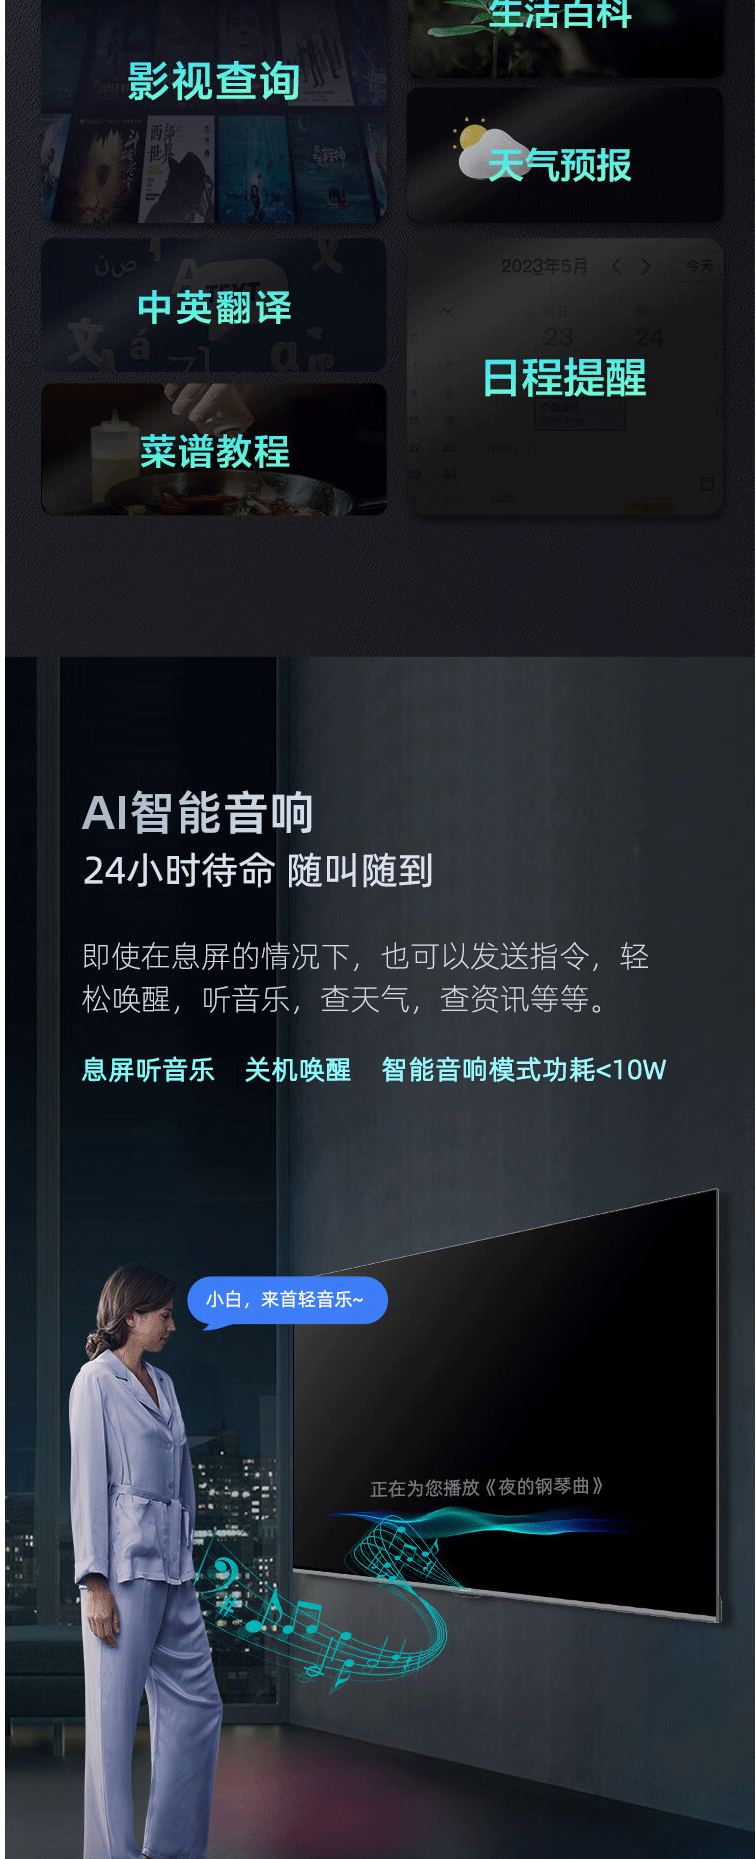 长虹/CHANGHONG 65D59H 65英寸4K超高清 LED液晶电视机